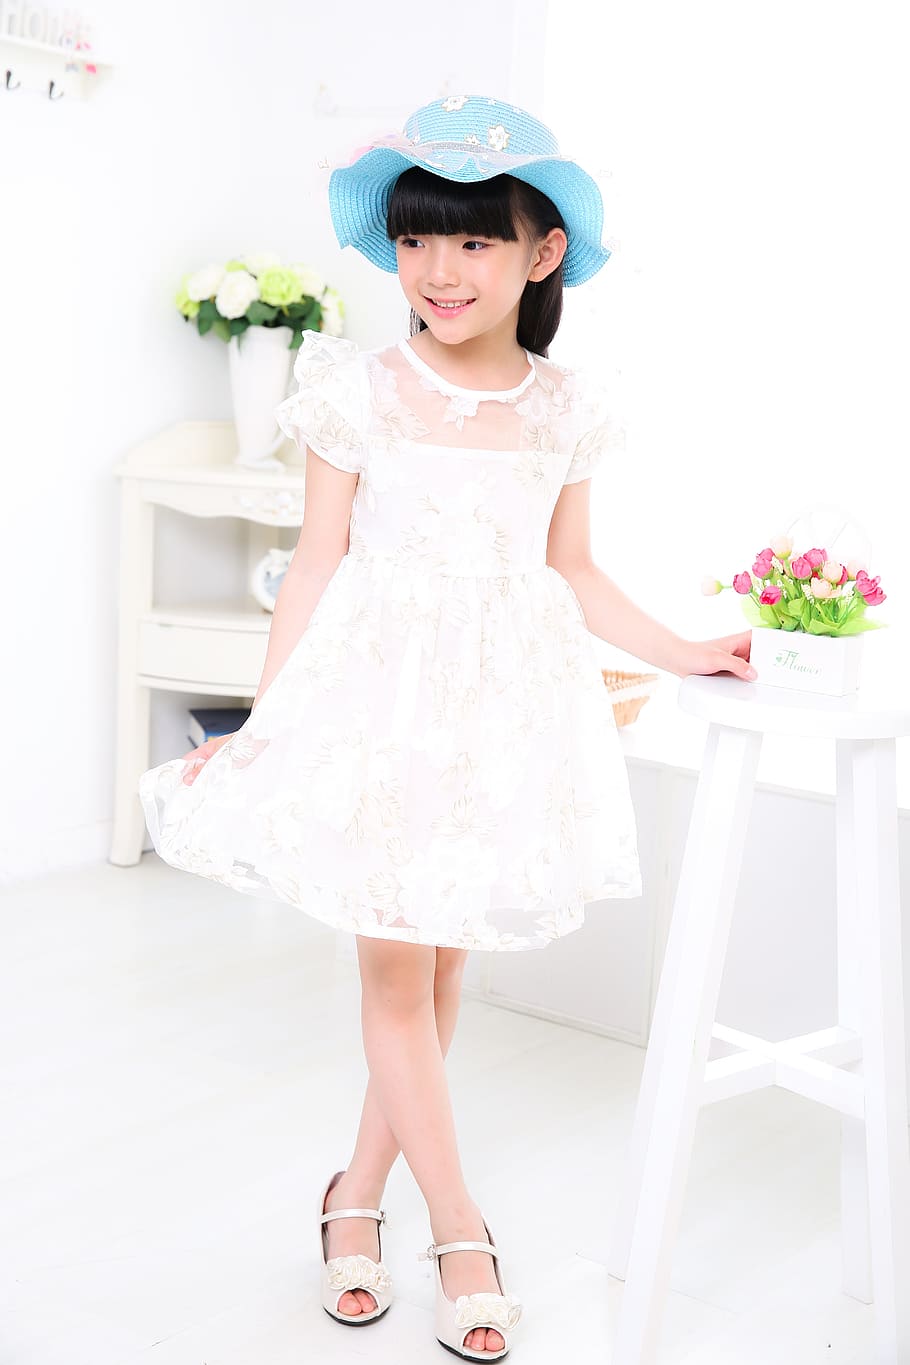 Child, Girls, Portrait, Photo, white dress, hat, bid, asia